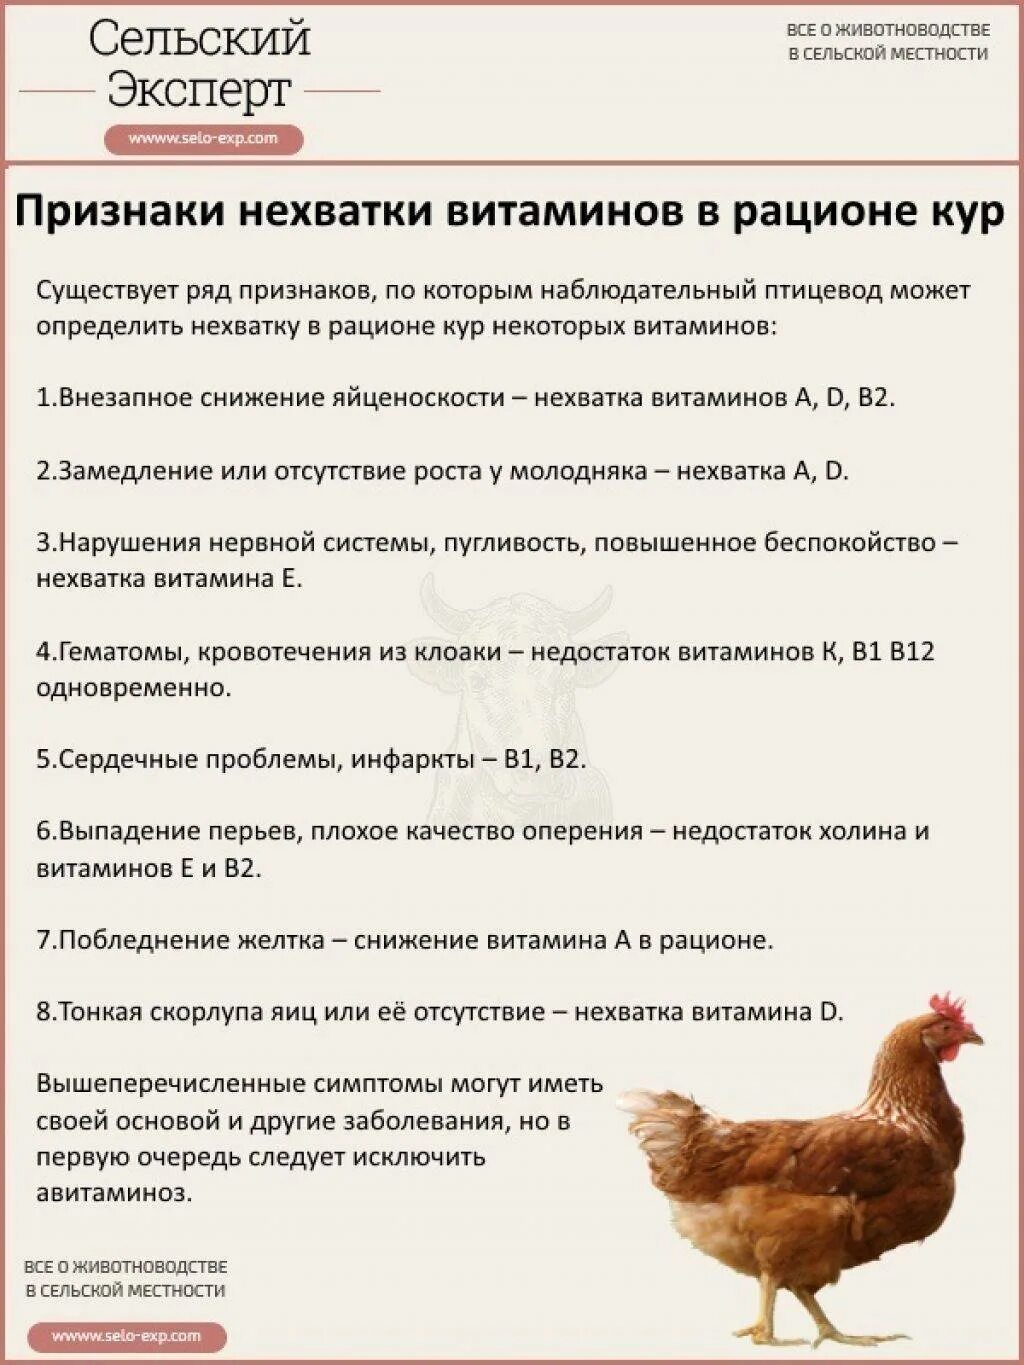 Можно ли цыплятам хлеб. Таблица кормления цыплят несушек. Схема кормления кур несушек. Нормы кормления цыплят таблица. Таблица корма цыплят несушек.